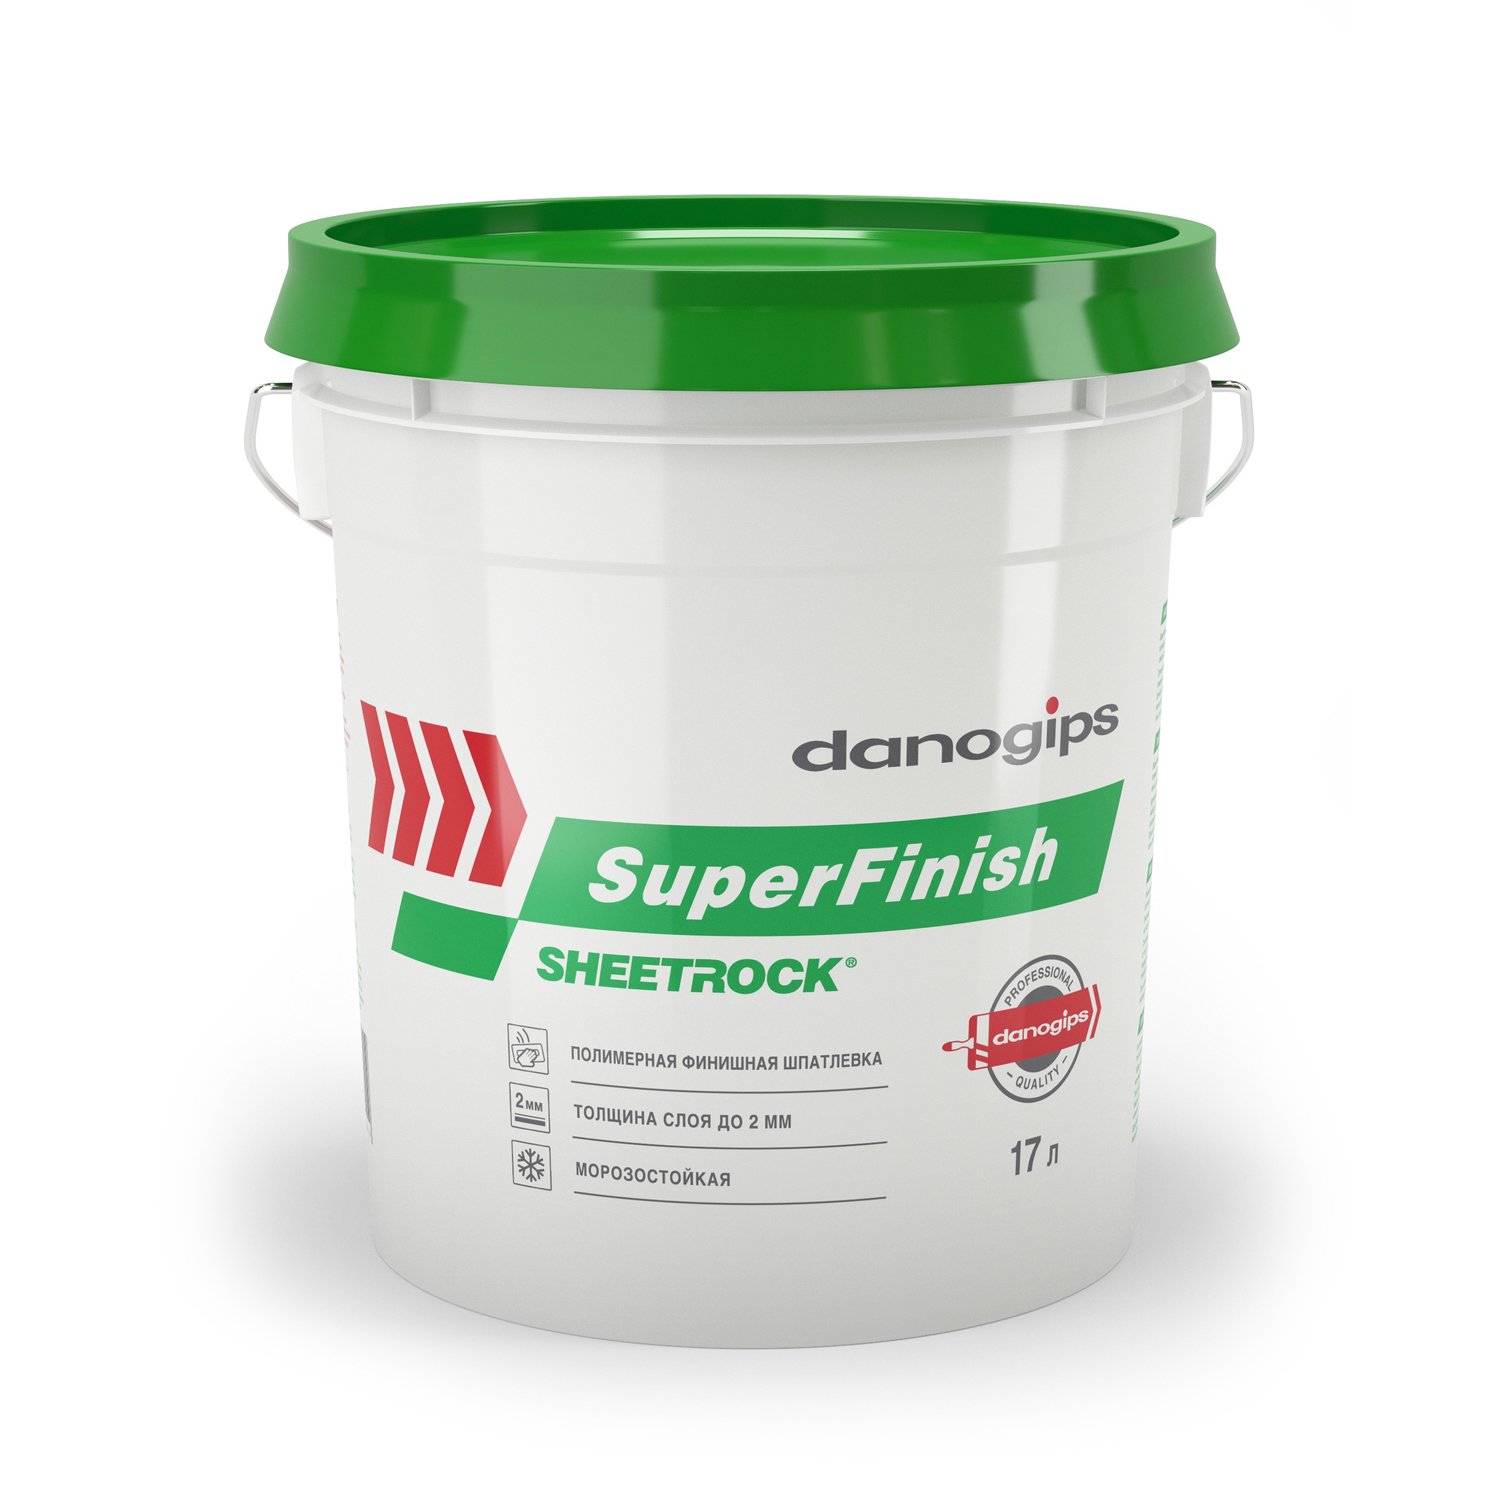 Шпатлевка универсальная Danogips Sheetrock SuperFinish 5 кг